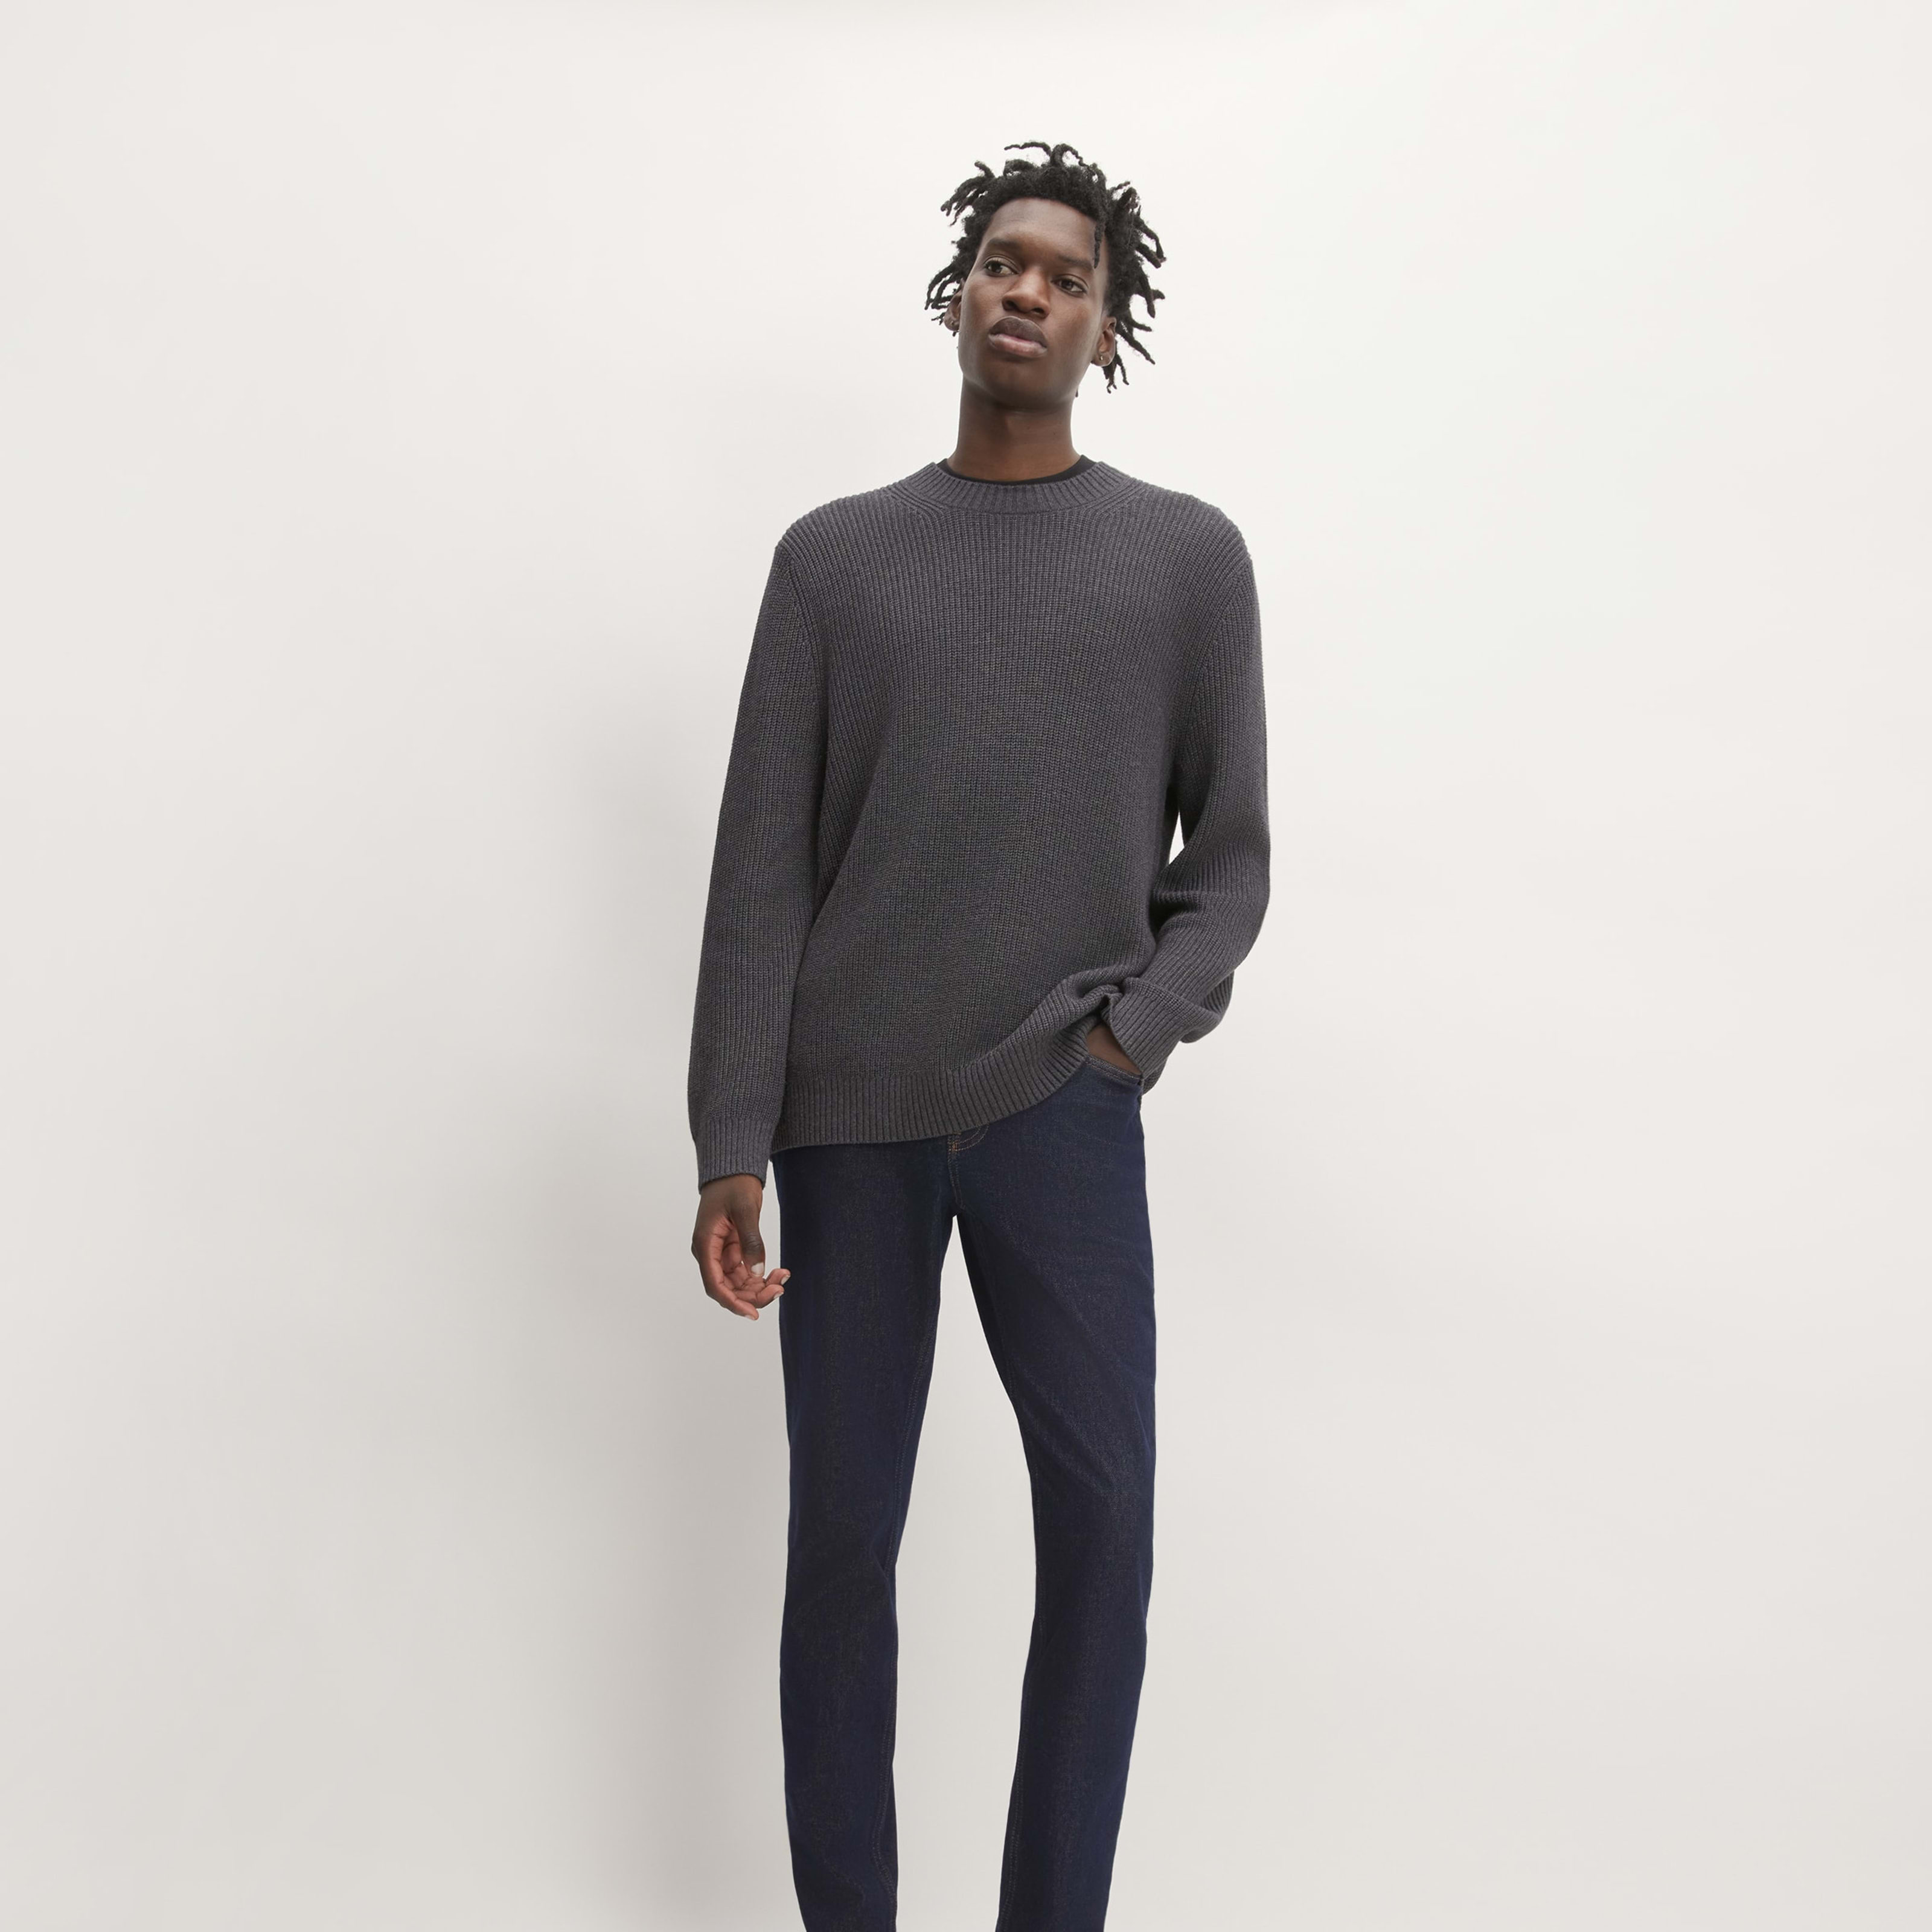 men's slim 4-way stretch organic jean | uniform by everlane in dark indigo, size 40x34